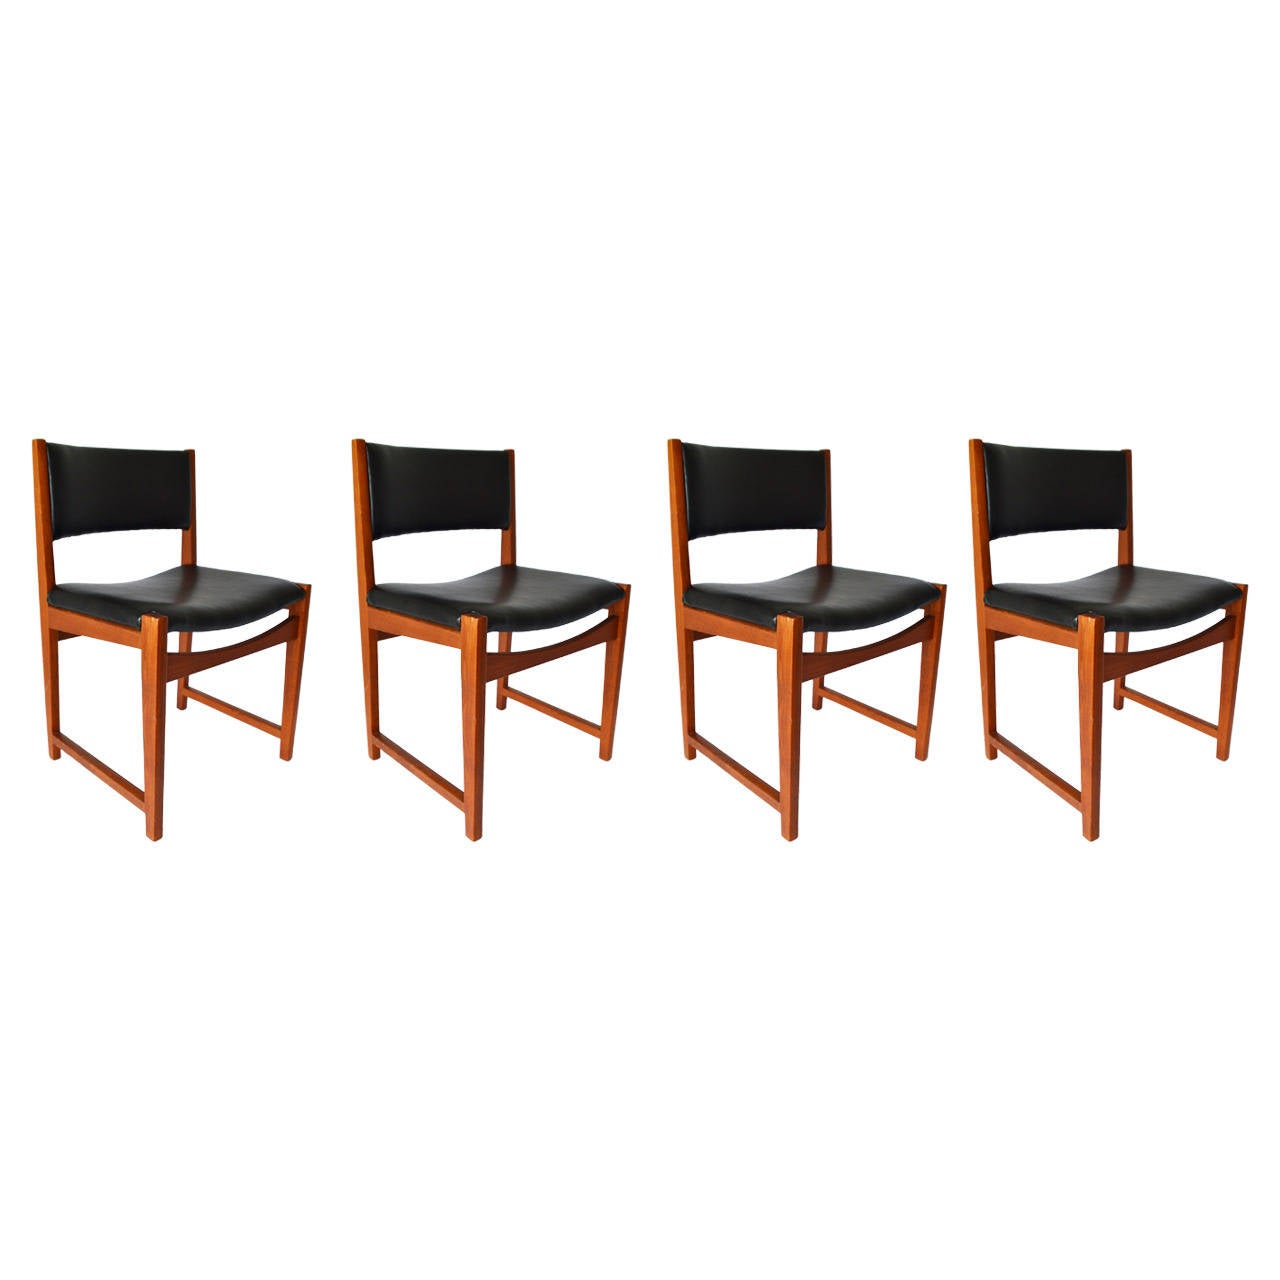 Set of four Danish Modern Midcentury teak chairs model no. 350 by Peter Hvidt & Orla Mølgaard-Nielsen for Søborg Møbelfabrik, Denmark, 1960's.

Excellent condition, new upholstery.

We ship worldwide.